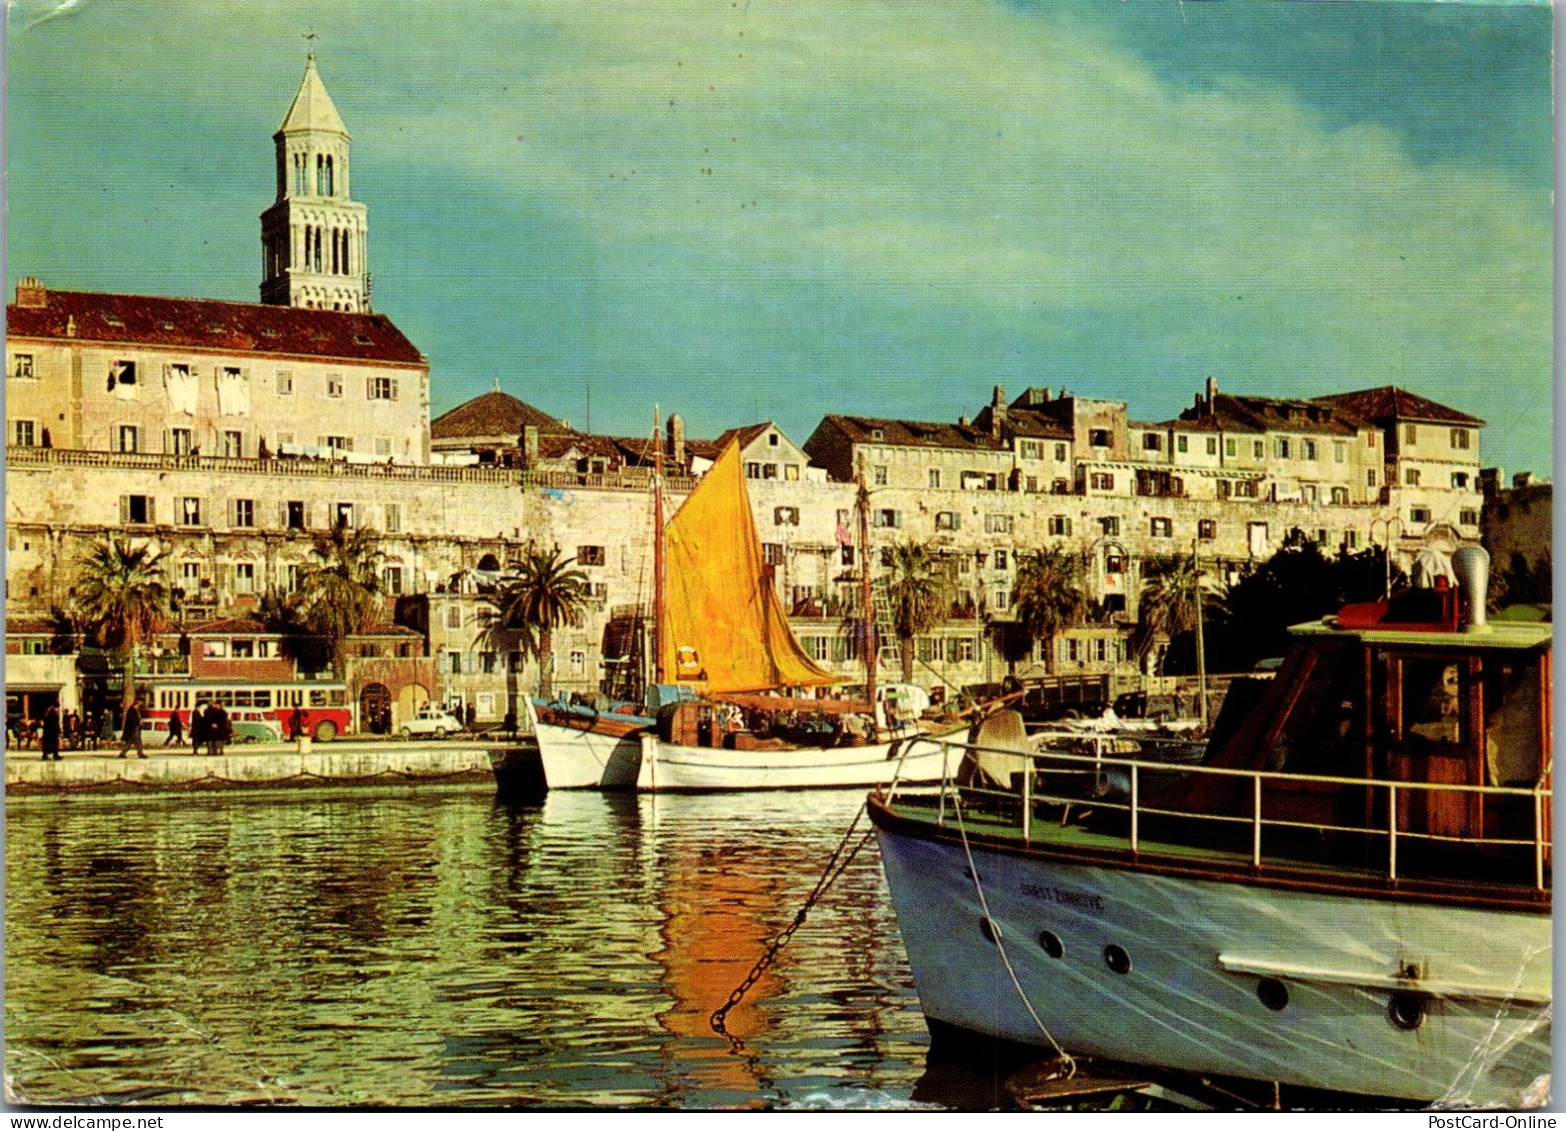 51398 - Kroatien - Split , View - Gelaufen 1968 - Croatia